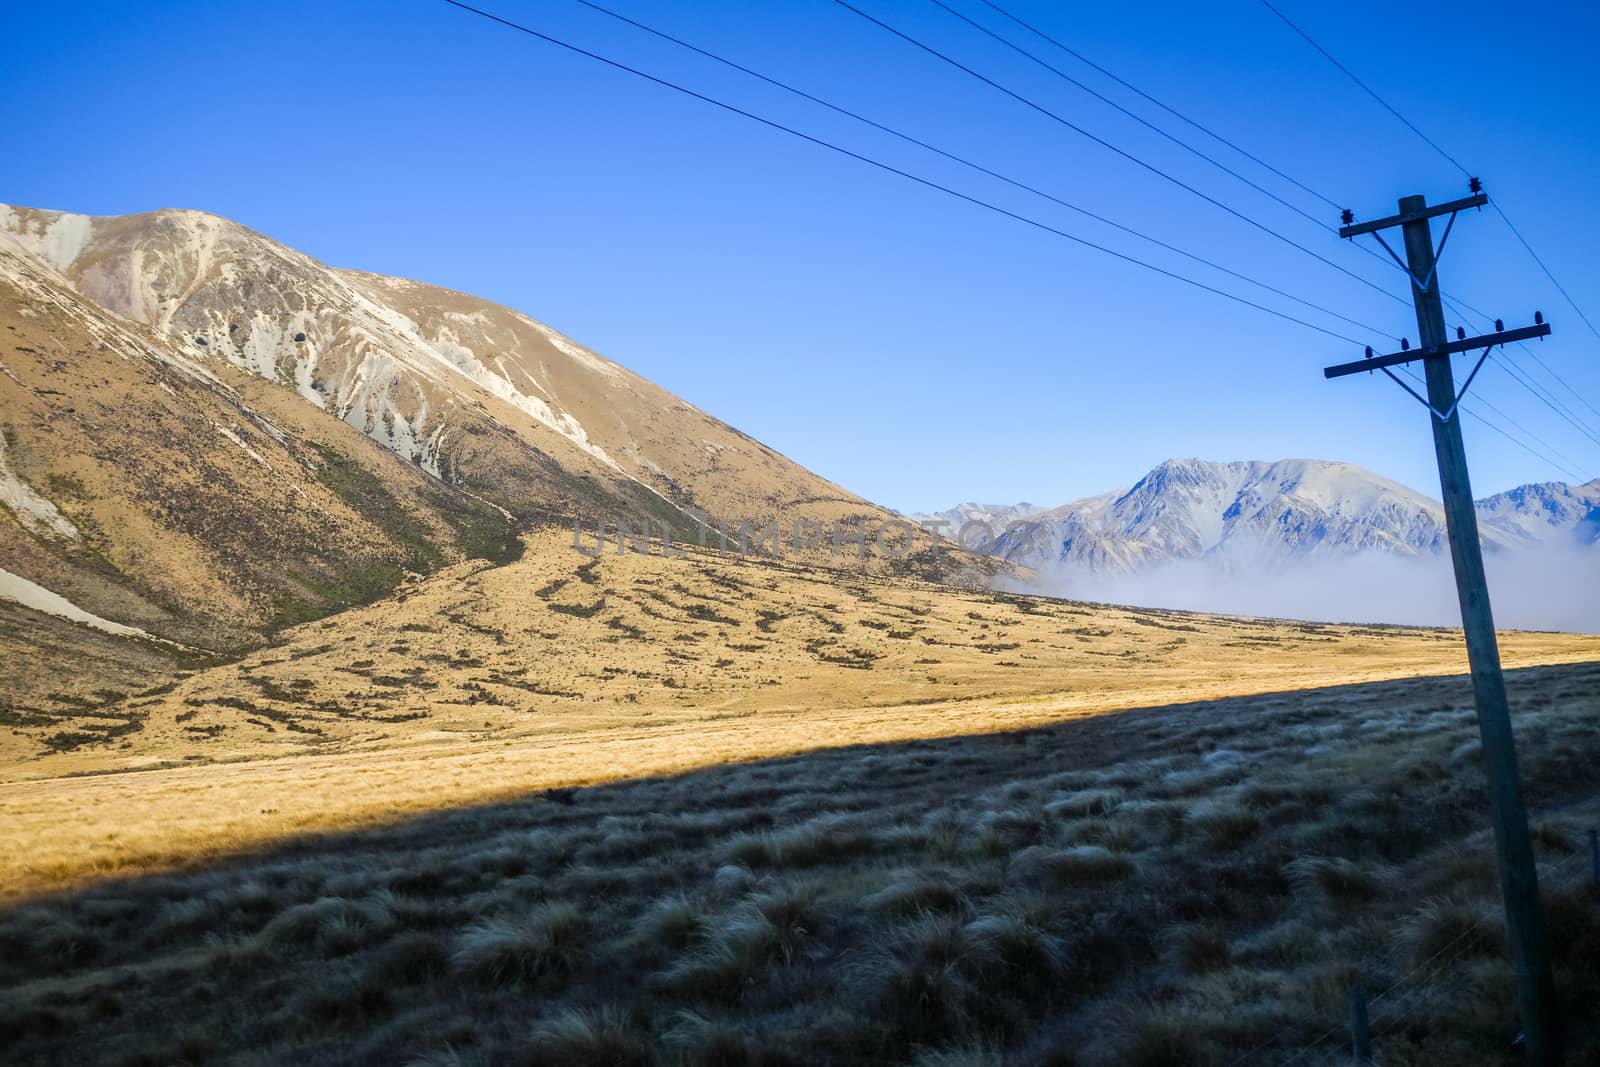 Mountain fields landscape in New Zealand alps